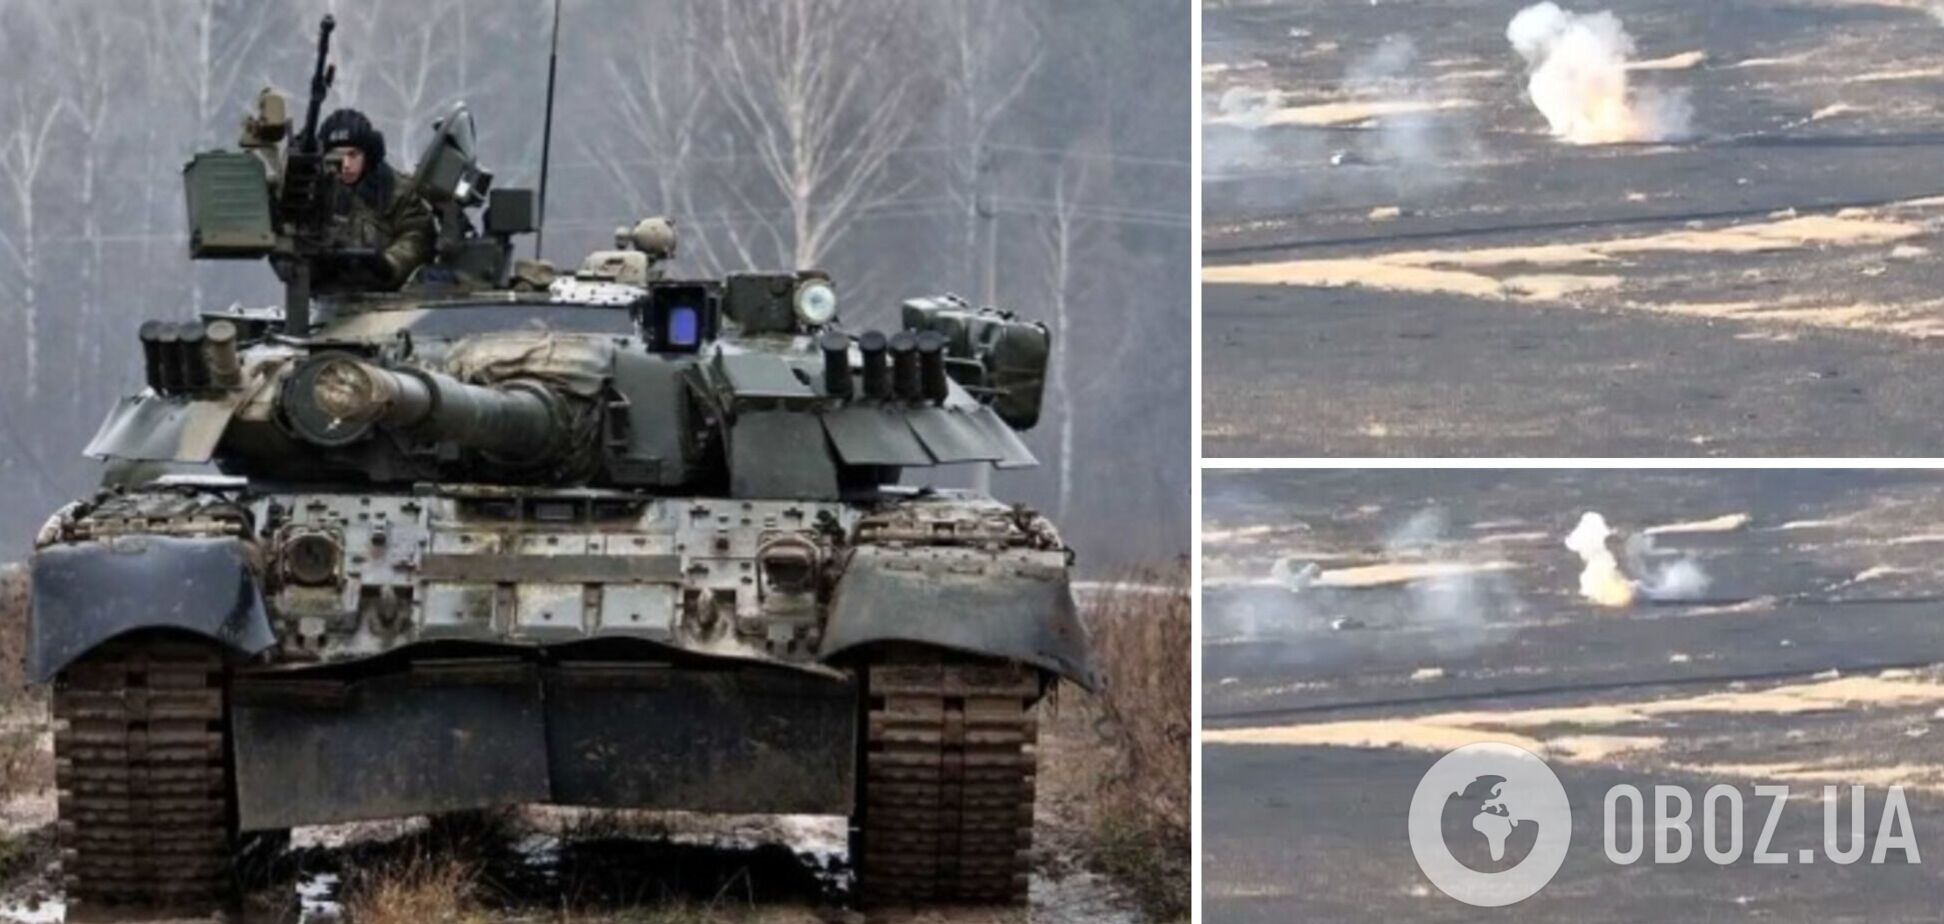 Оккупанты не оставляют попыток захватить город: появилось видео танкового боя под Авдеевкой